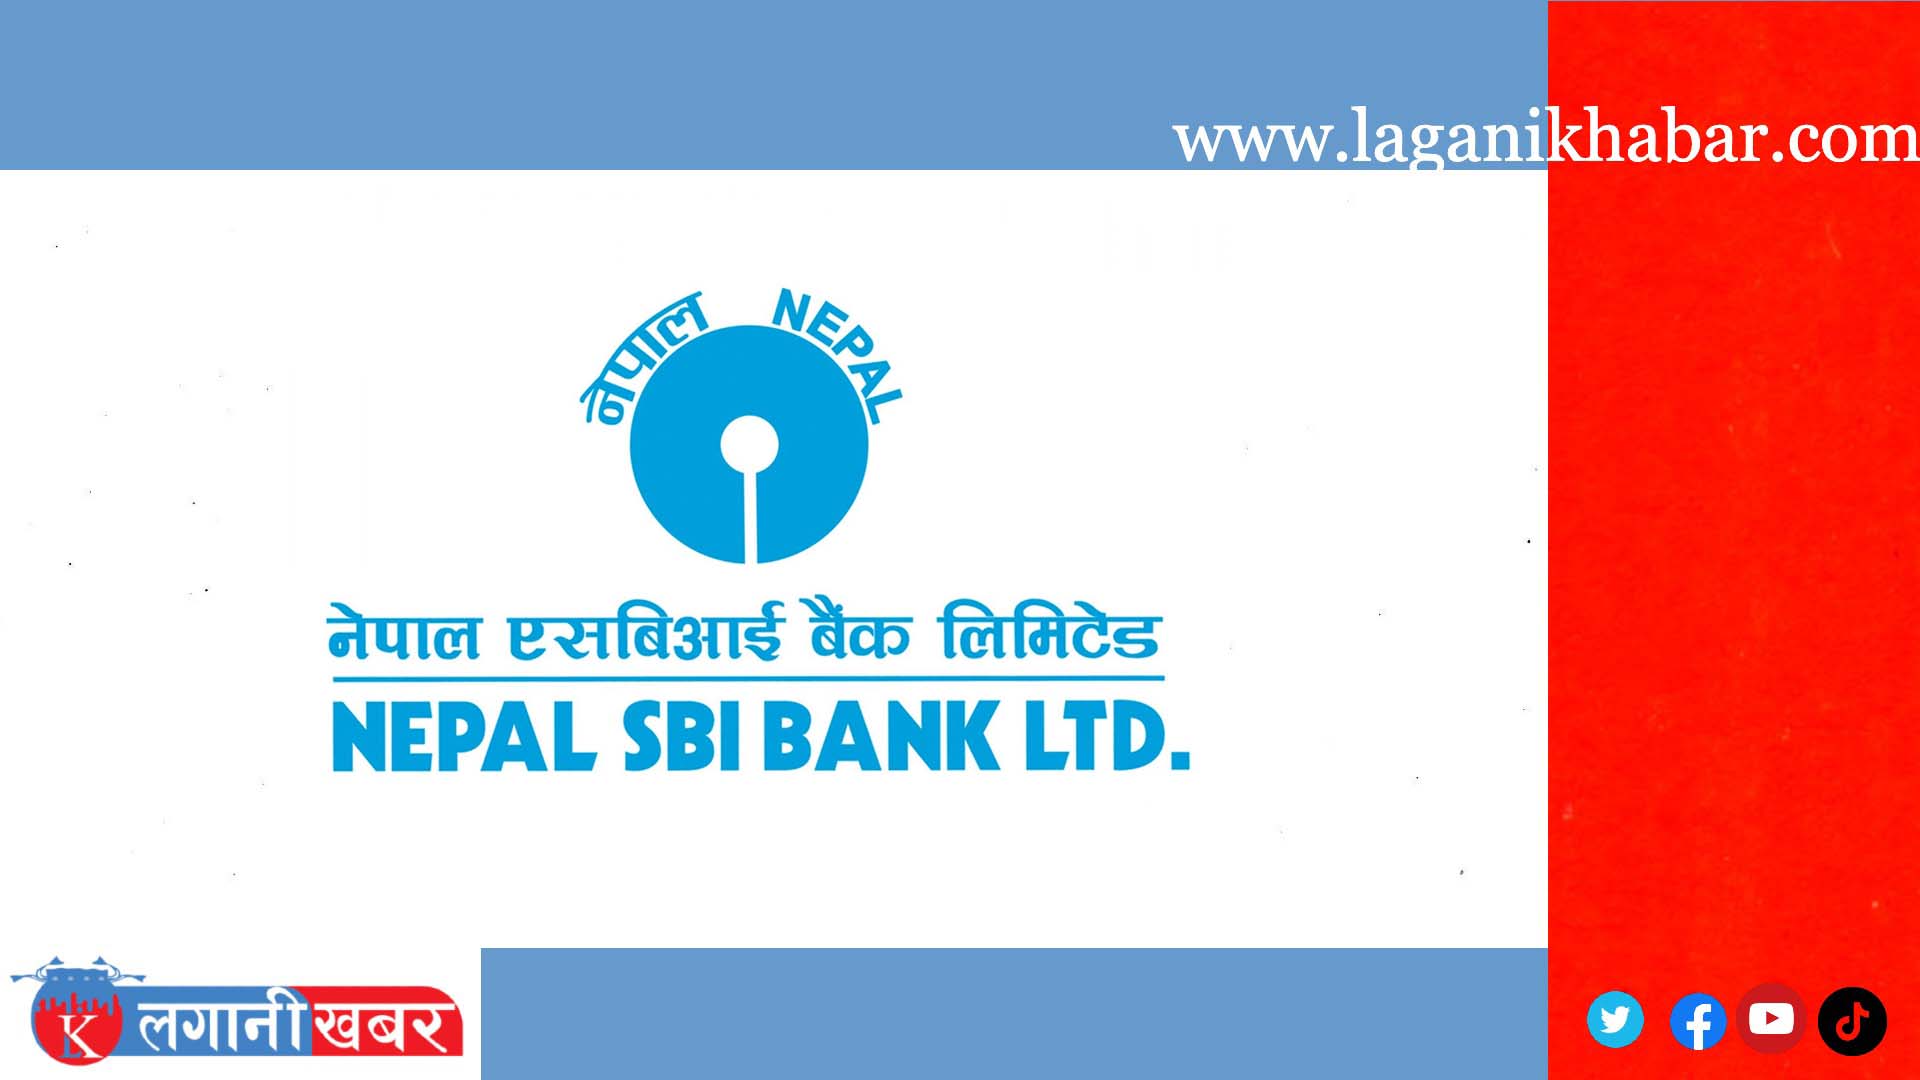 बाेर्डले दियाे नेपाल एसबीआई बैंकलाई ऋणपत्र निष्कासन गर्ने अनुमति